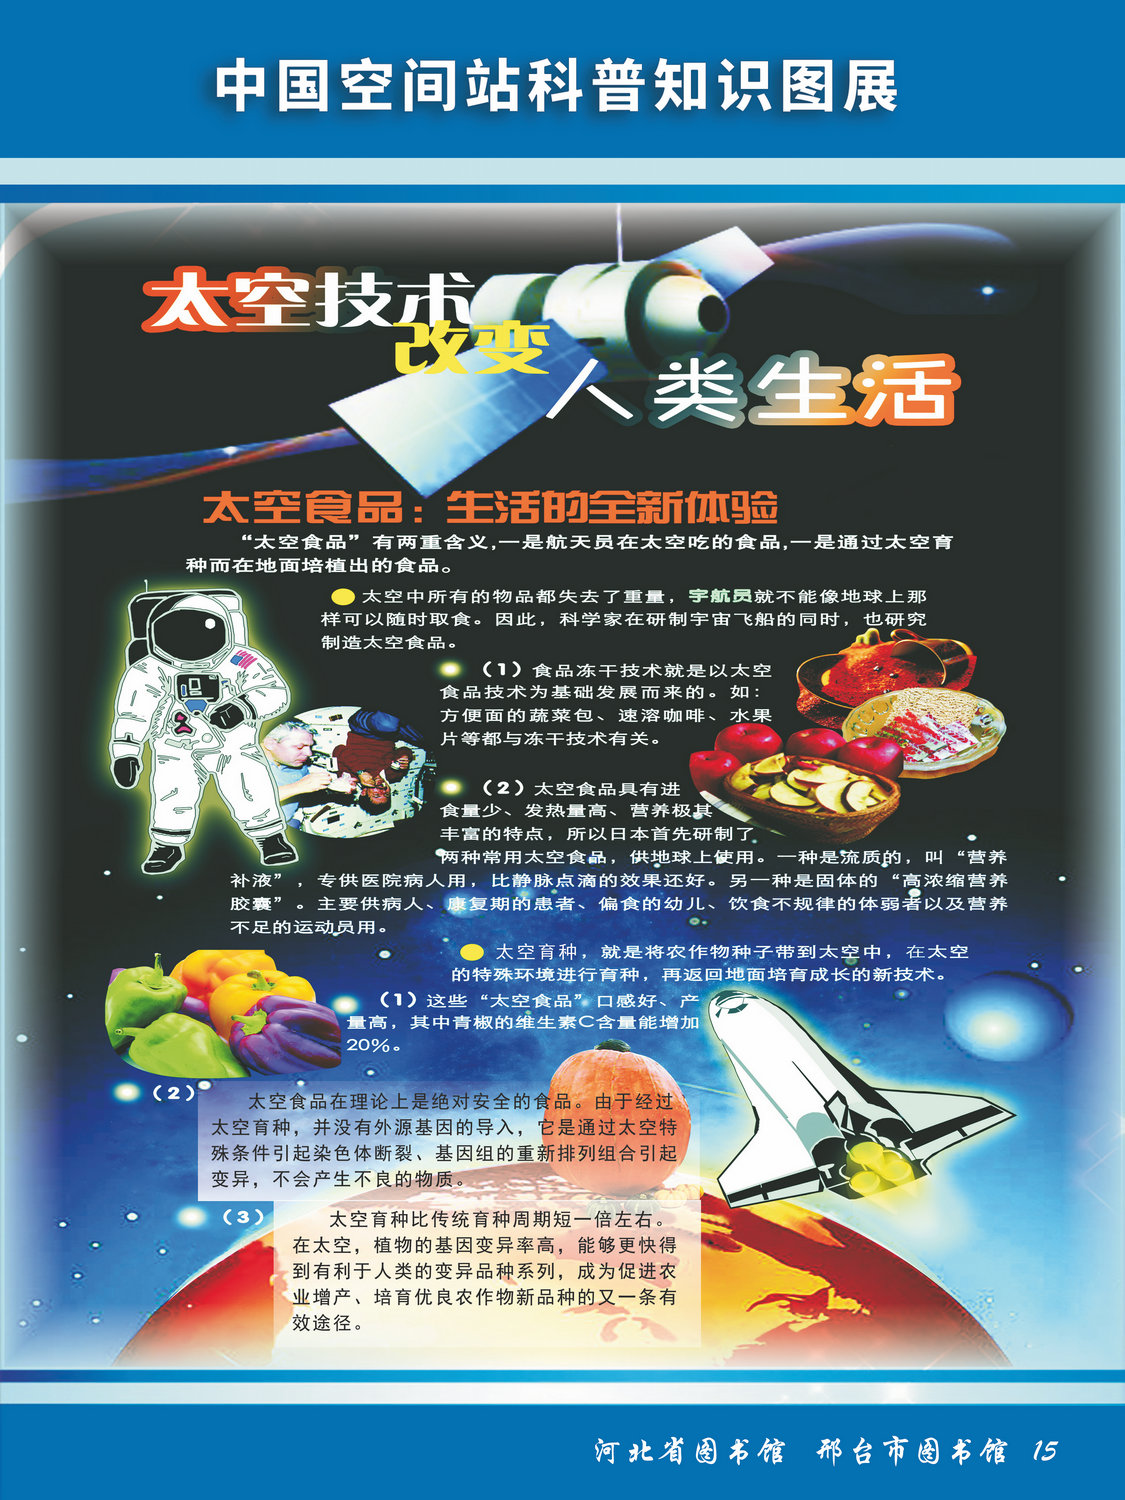 中国空间站科普知识图文展_图15